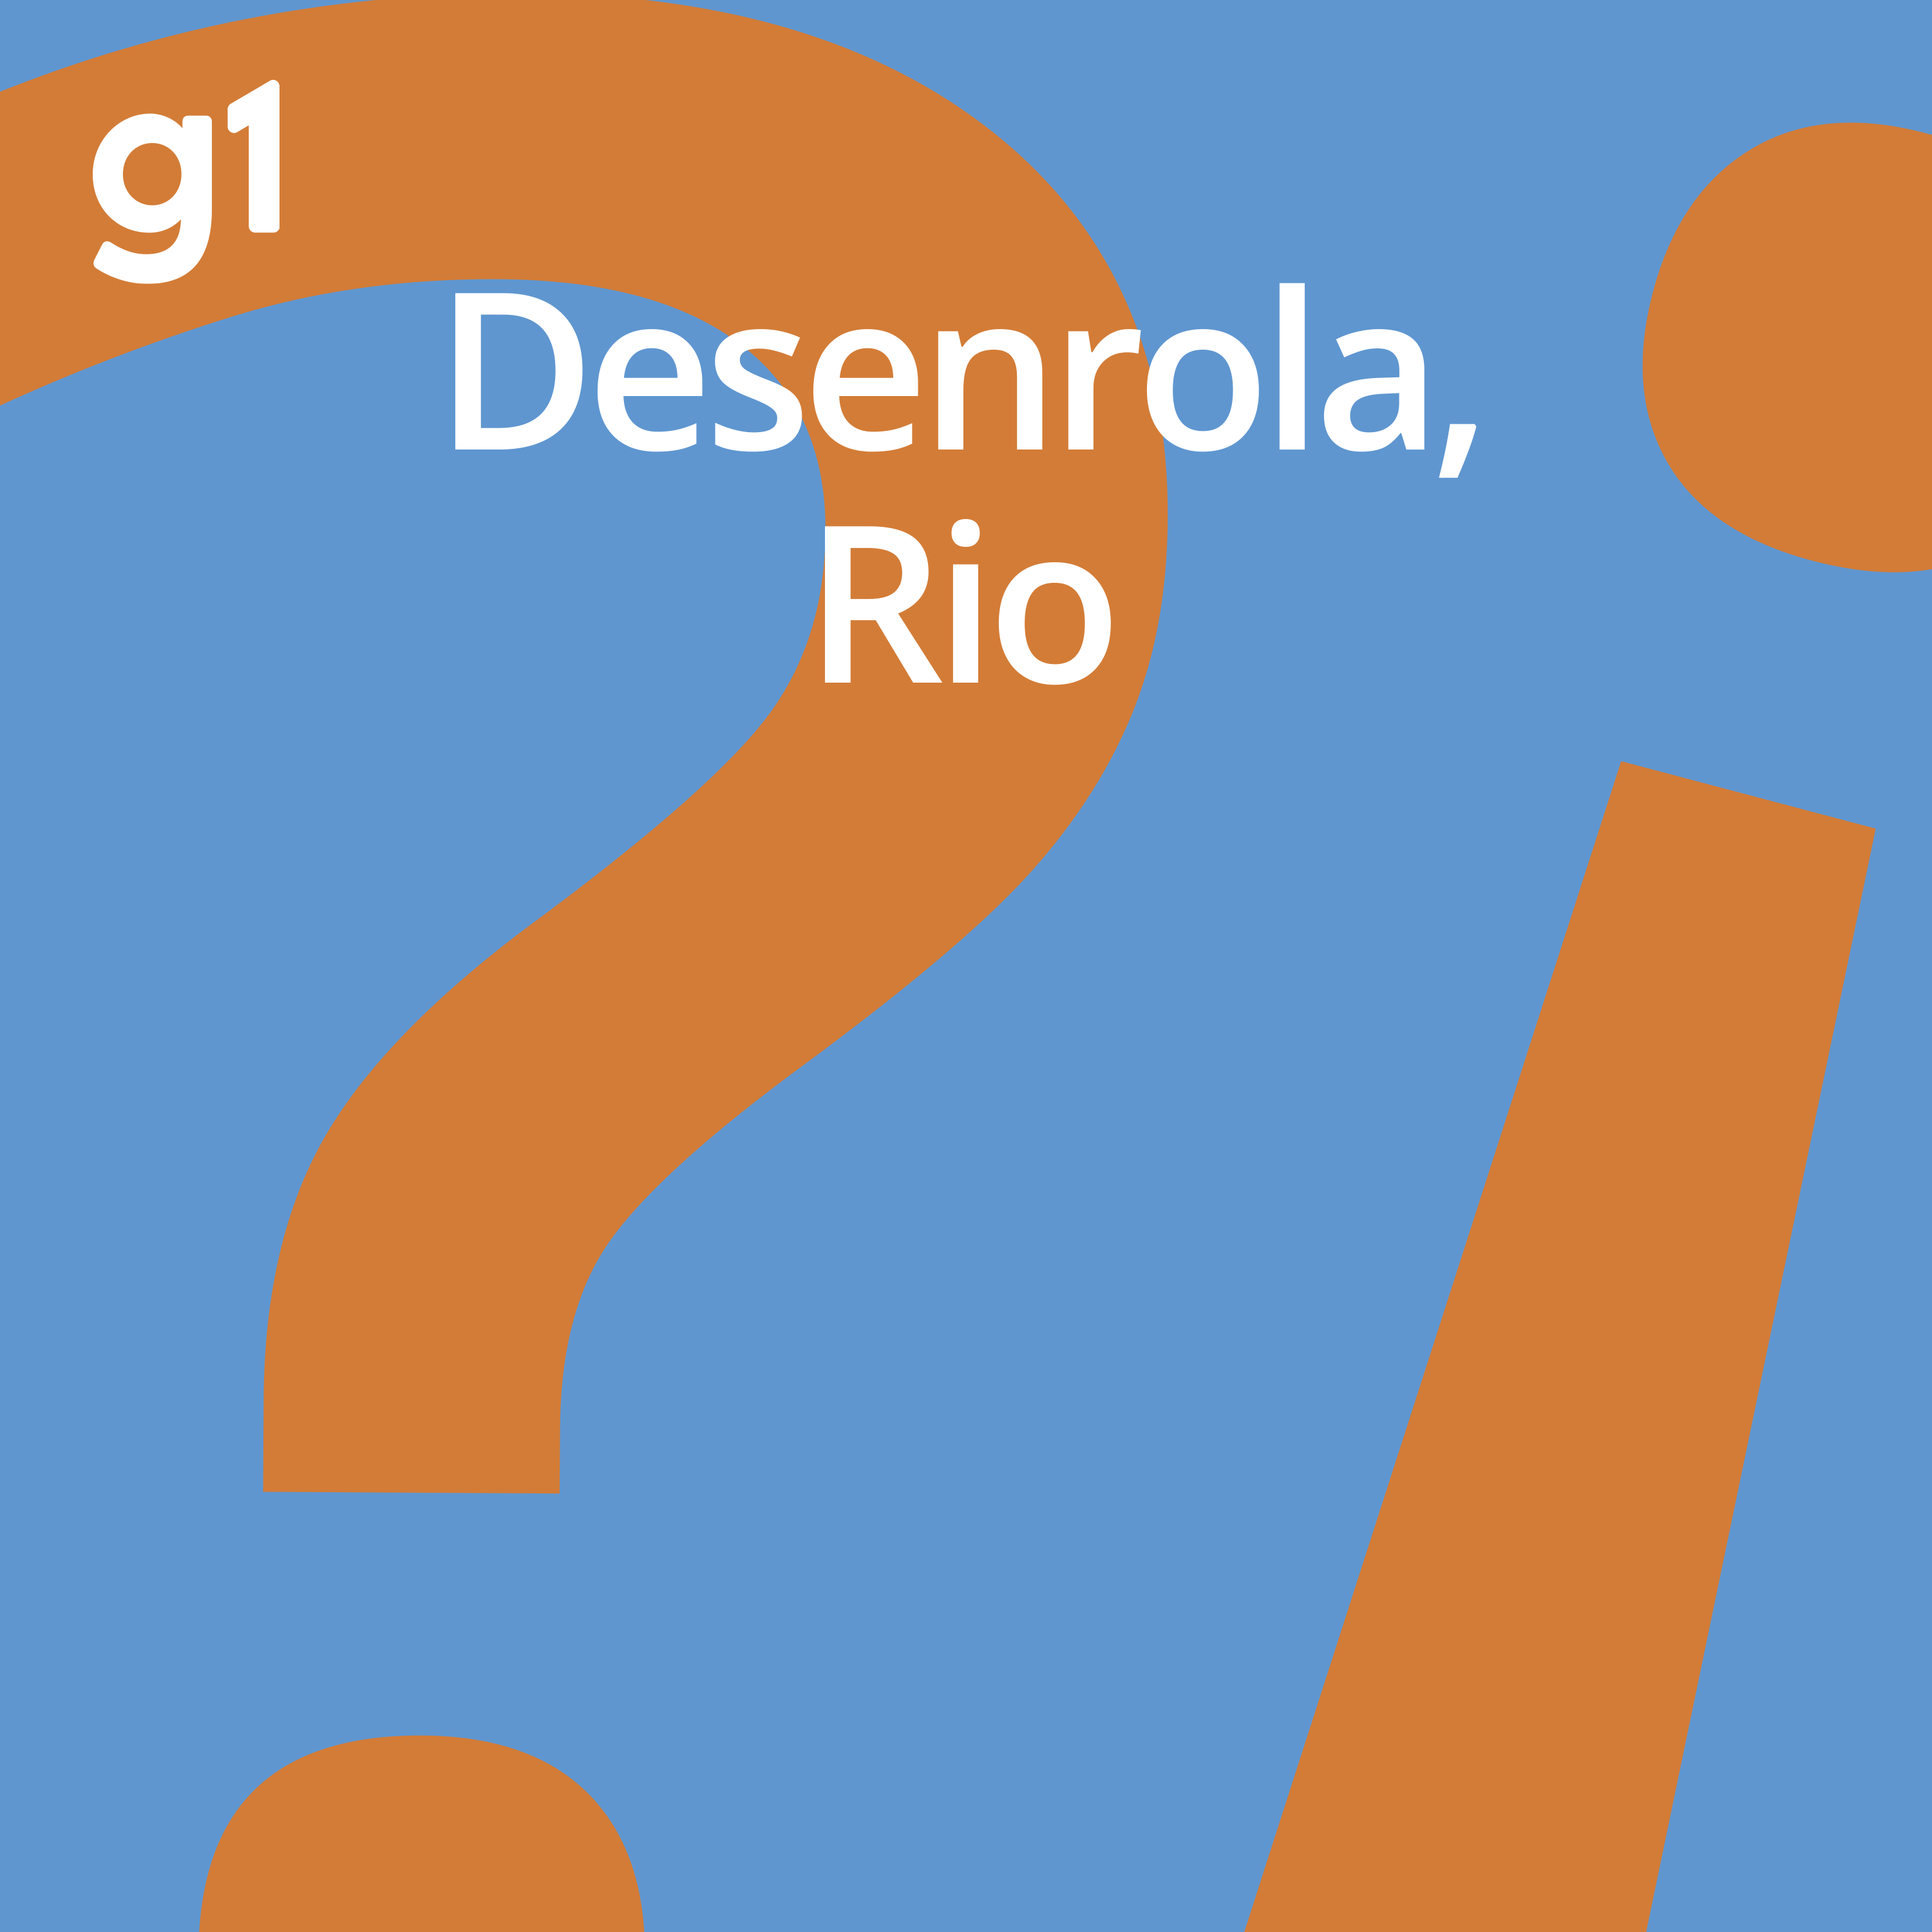 #69 Desenrola, Rio - O planejamento para a educação em 2021